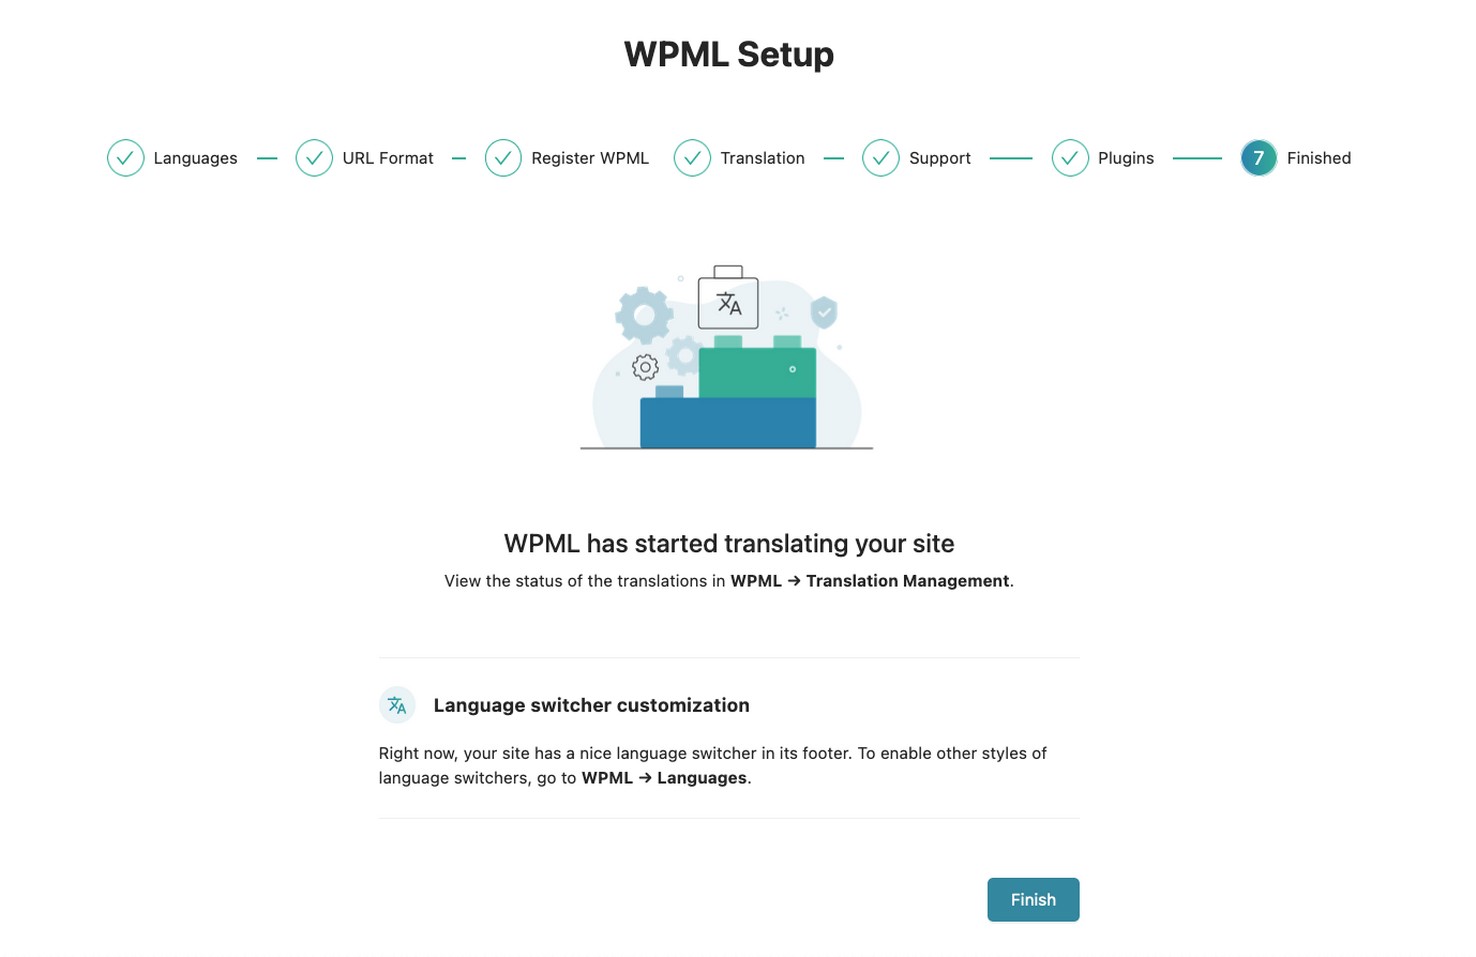 Finalizando la configuración de WPML